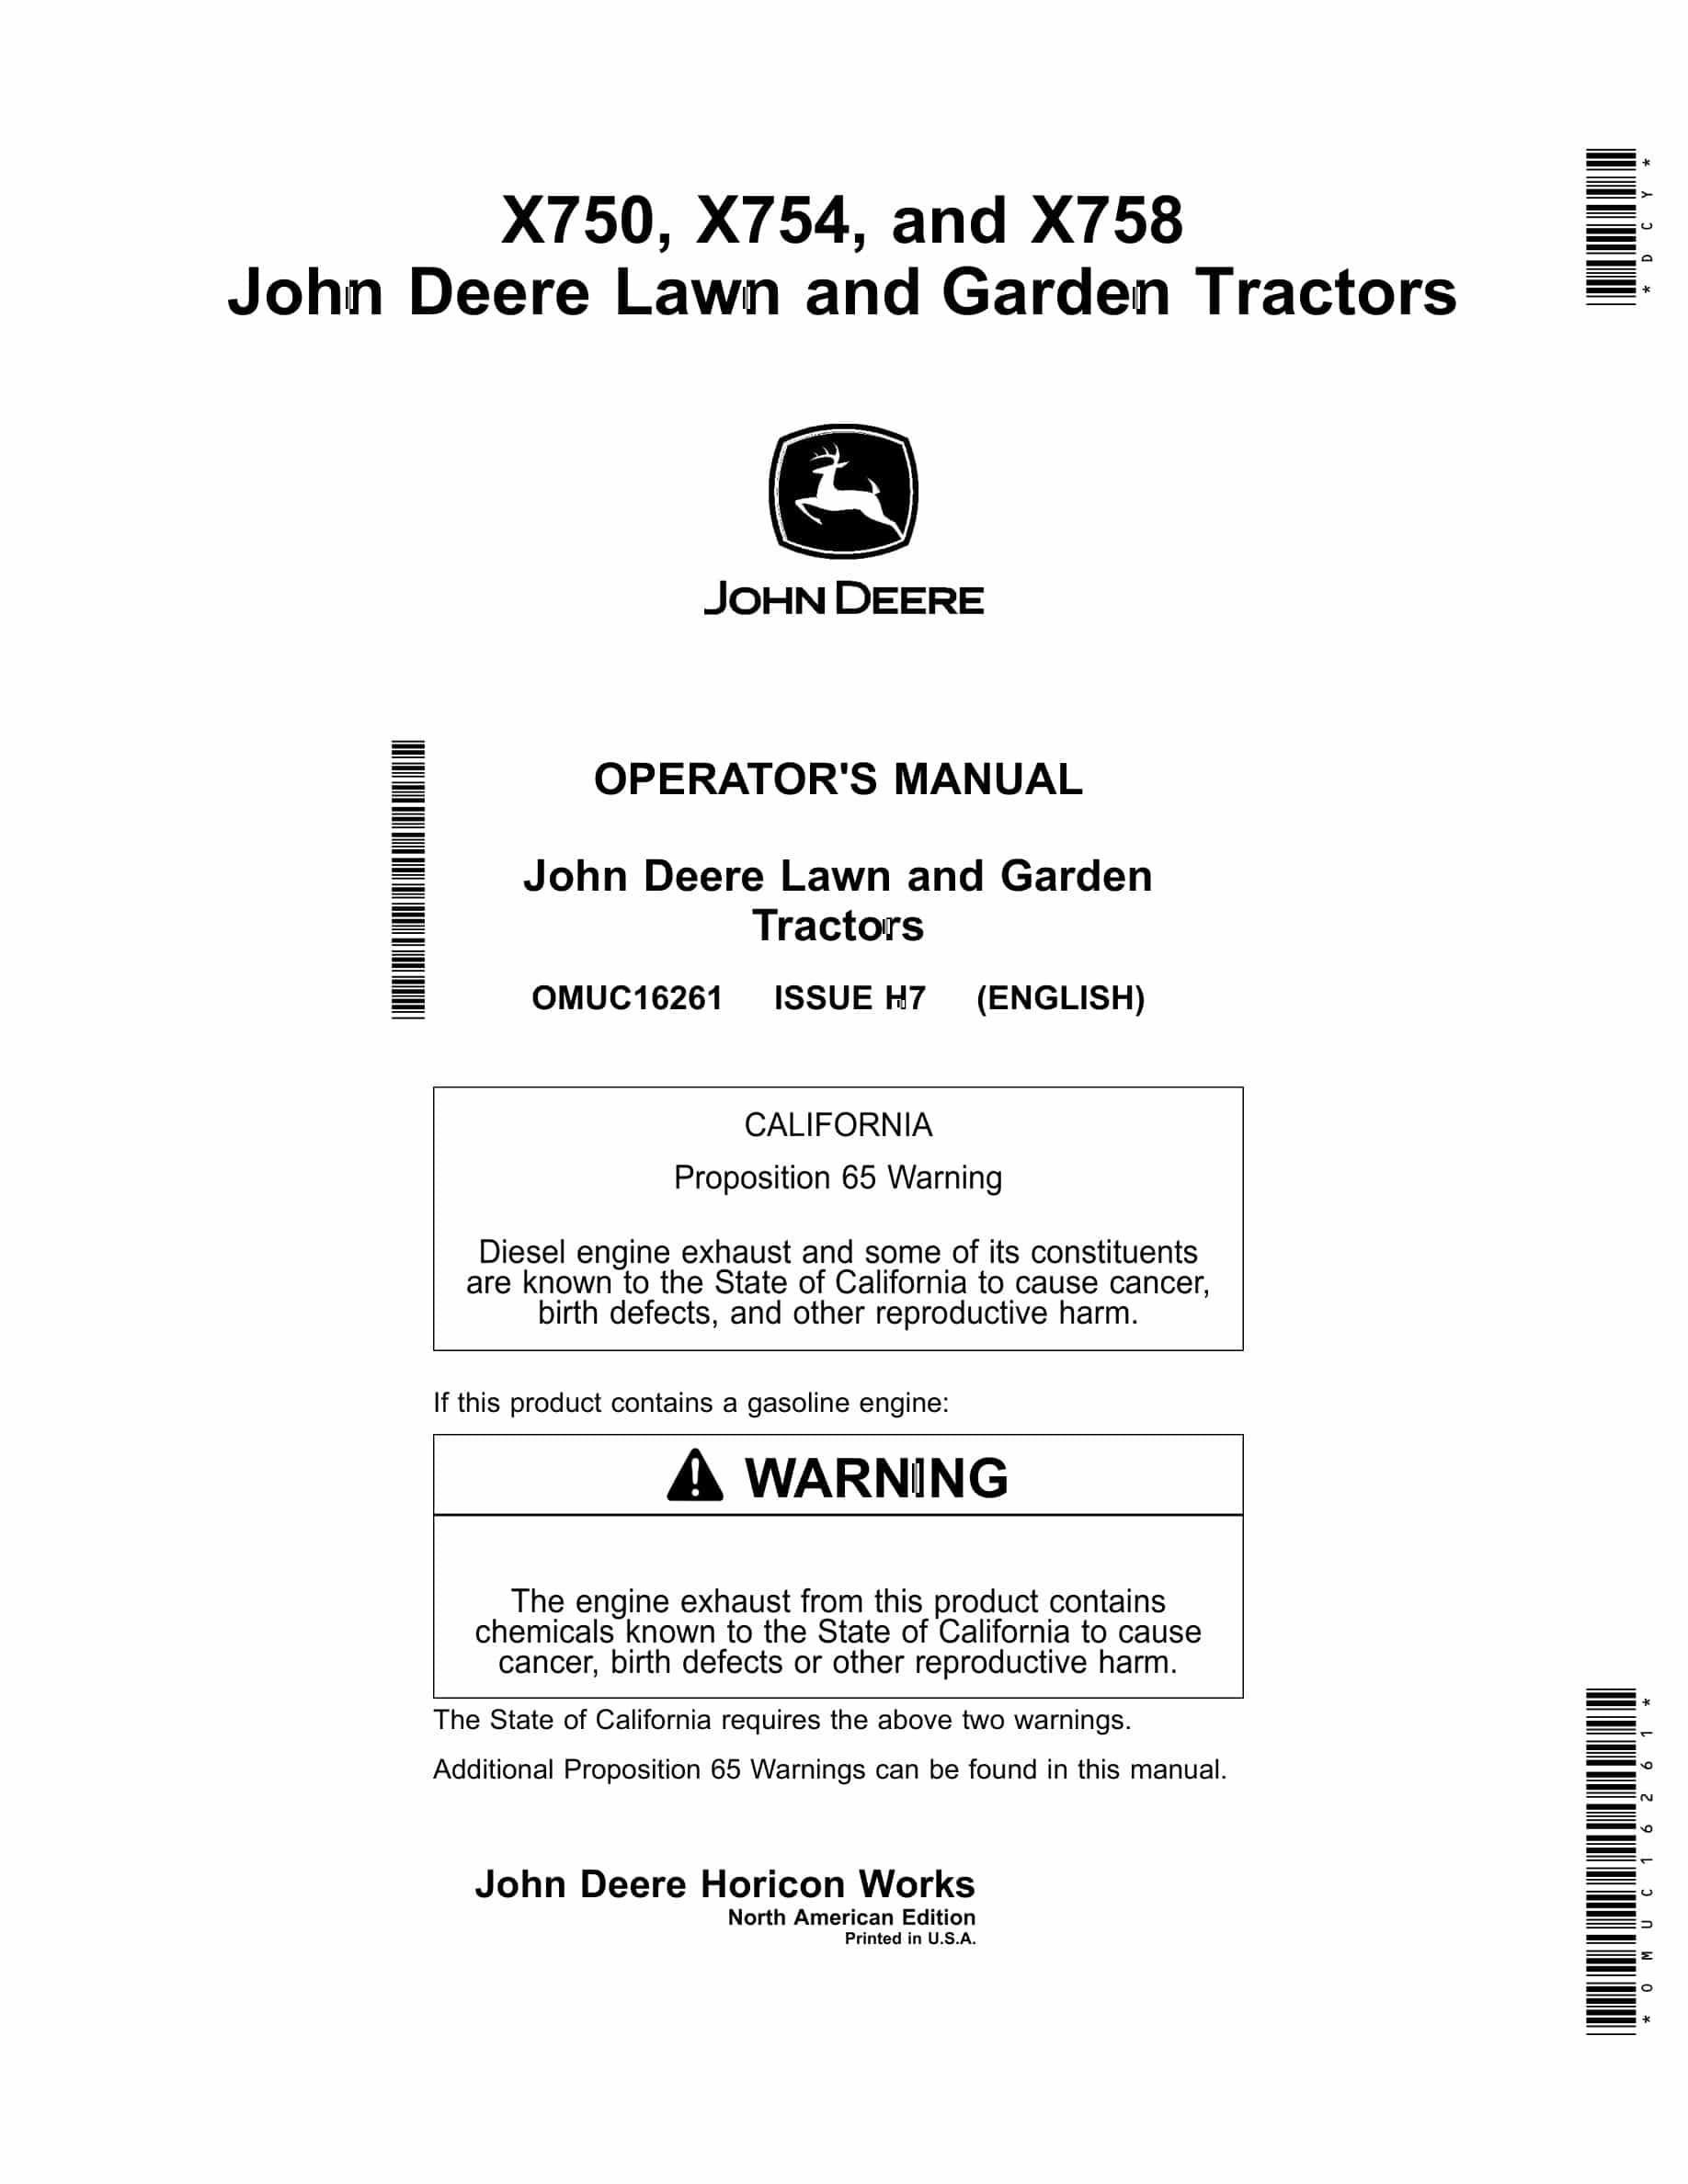 John Deere X750, X754, and X758 Tractor Operator Manual OMUC16261-1